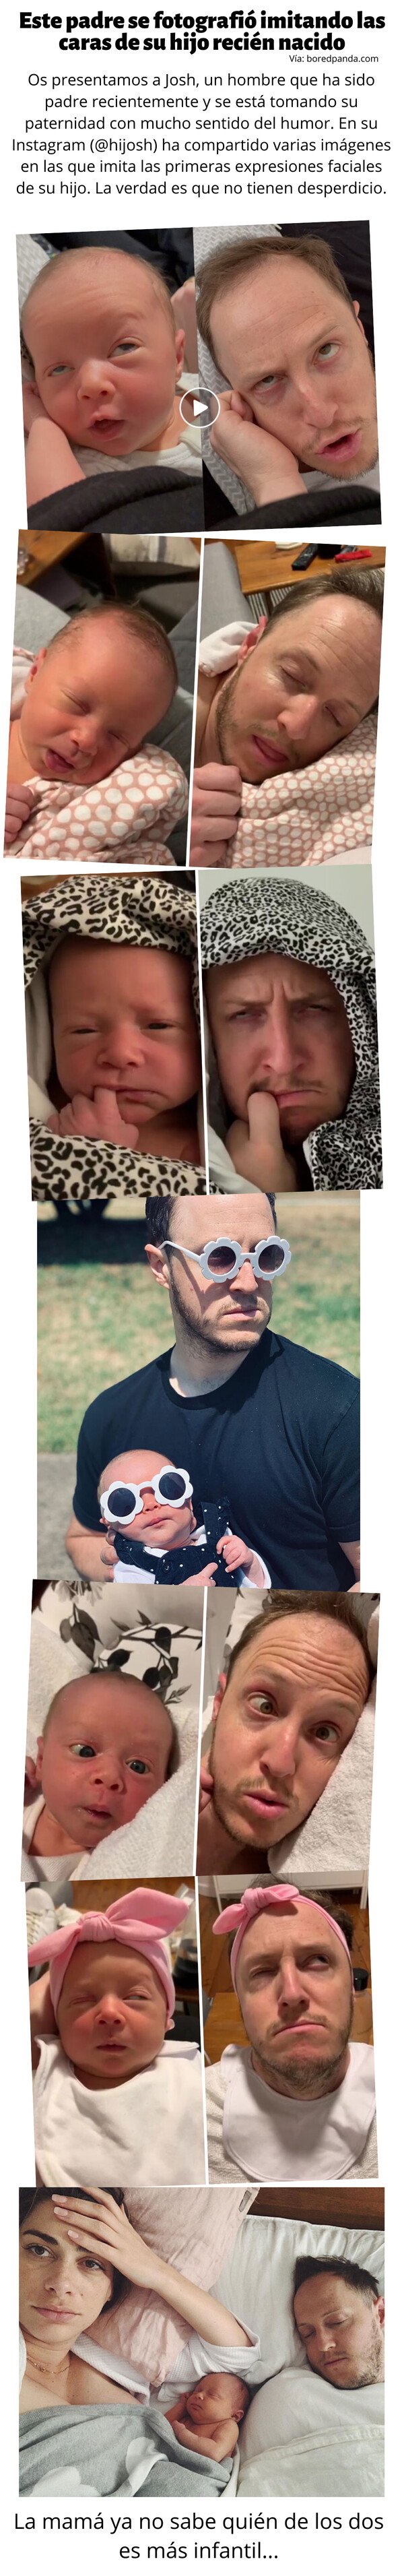 Meme_otros - Este padre se fotografió imitando las caras de su hijo recién nacido